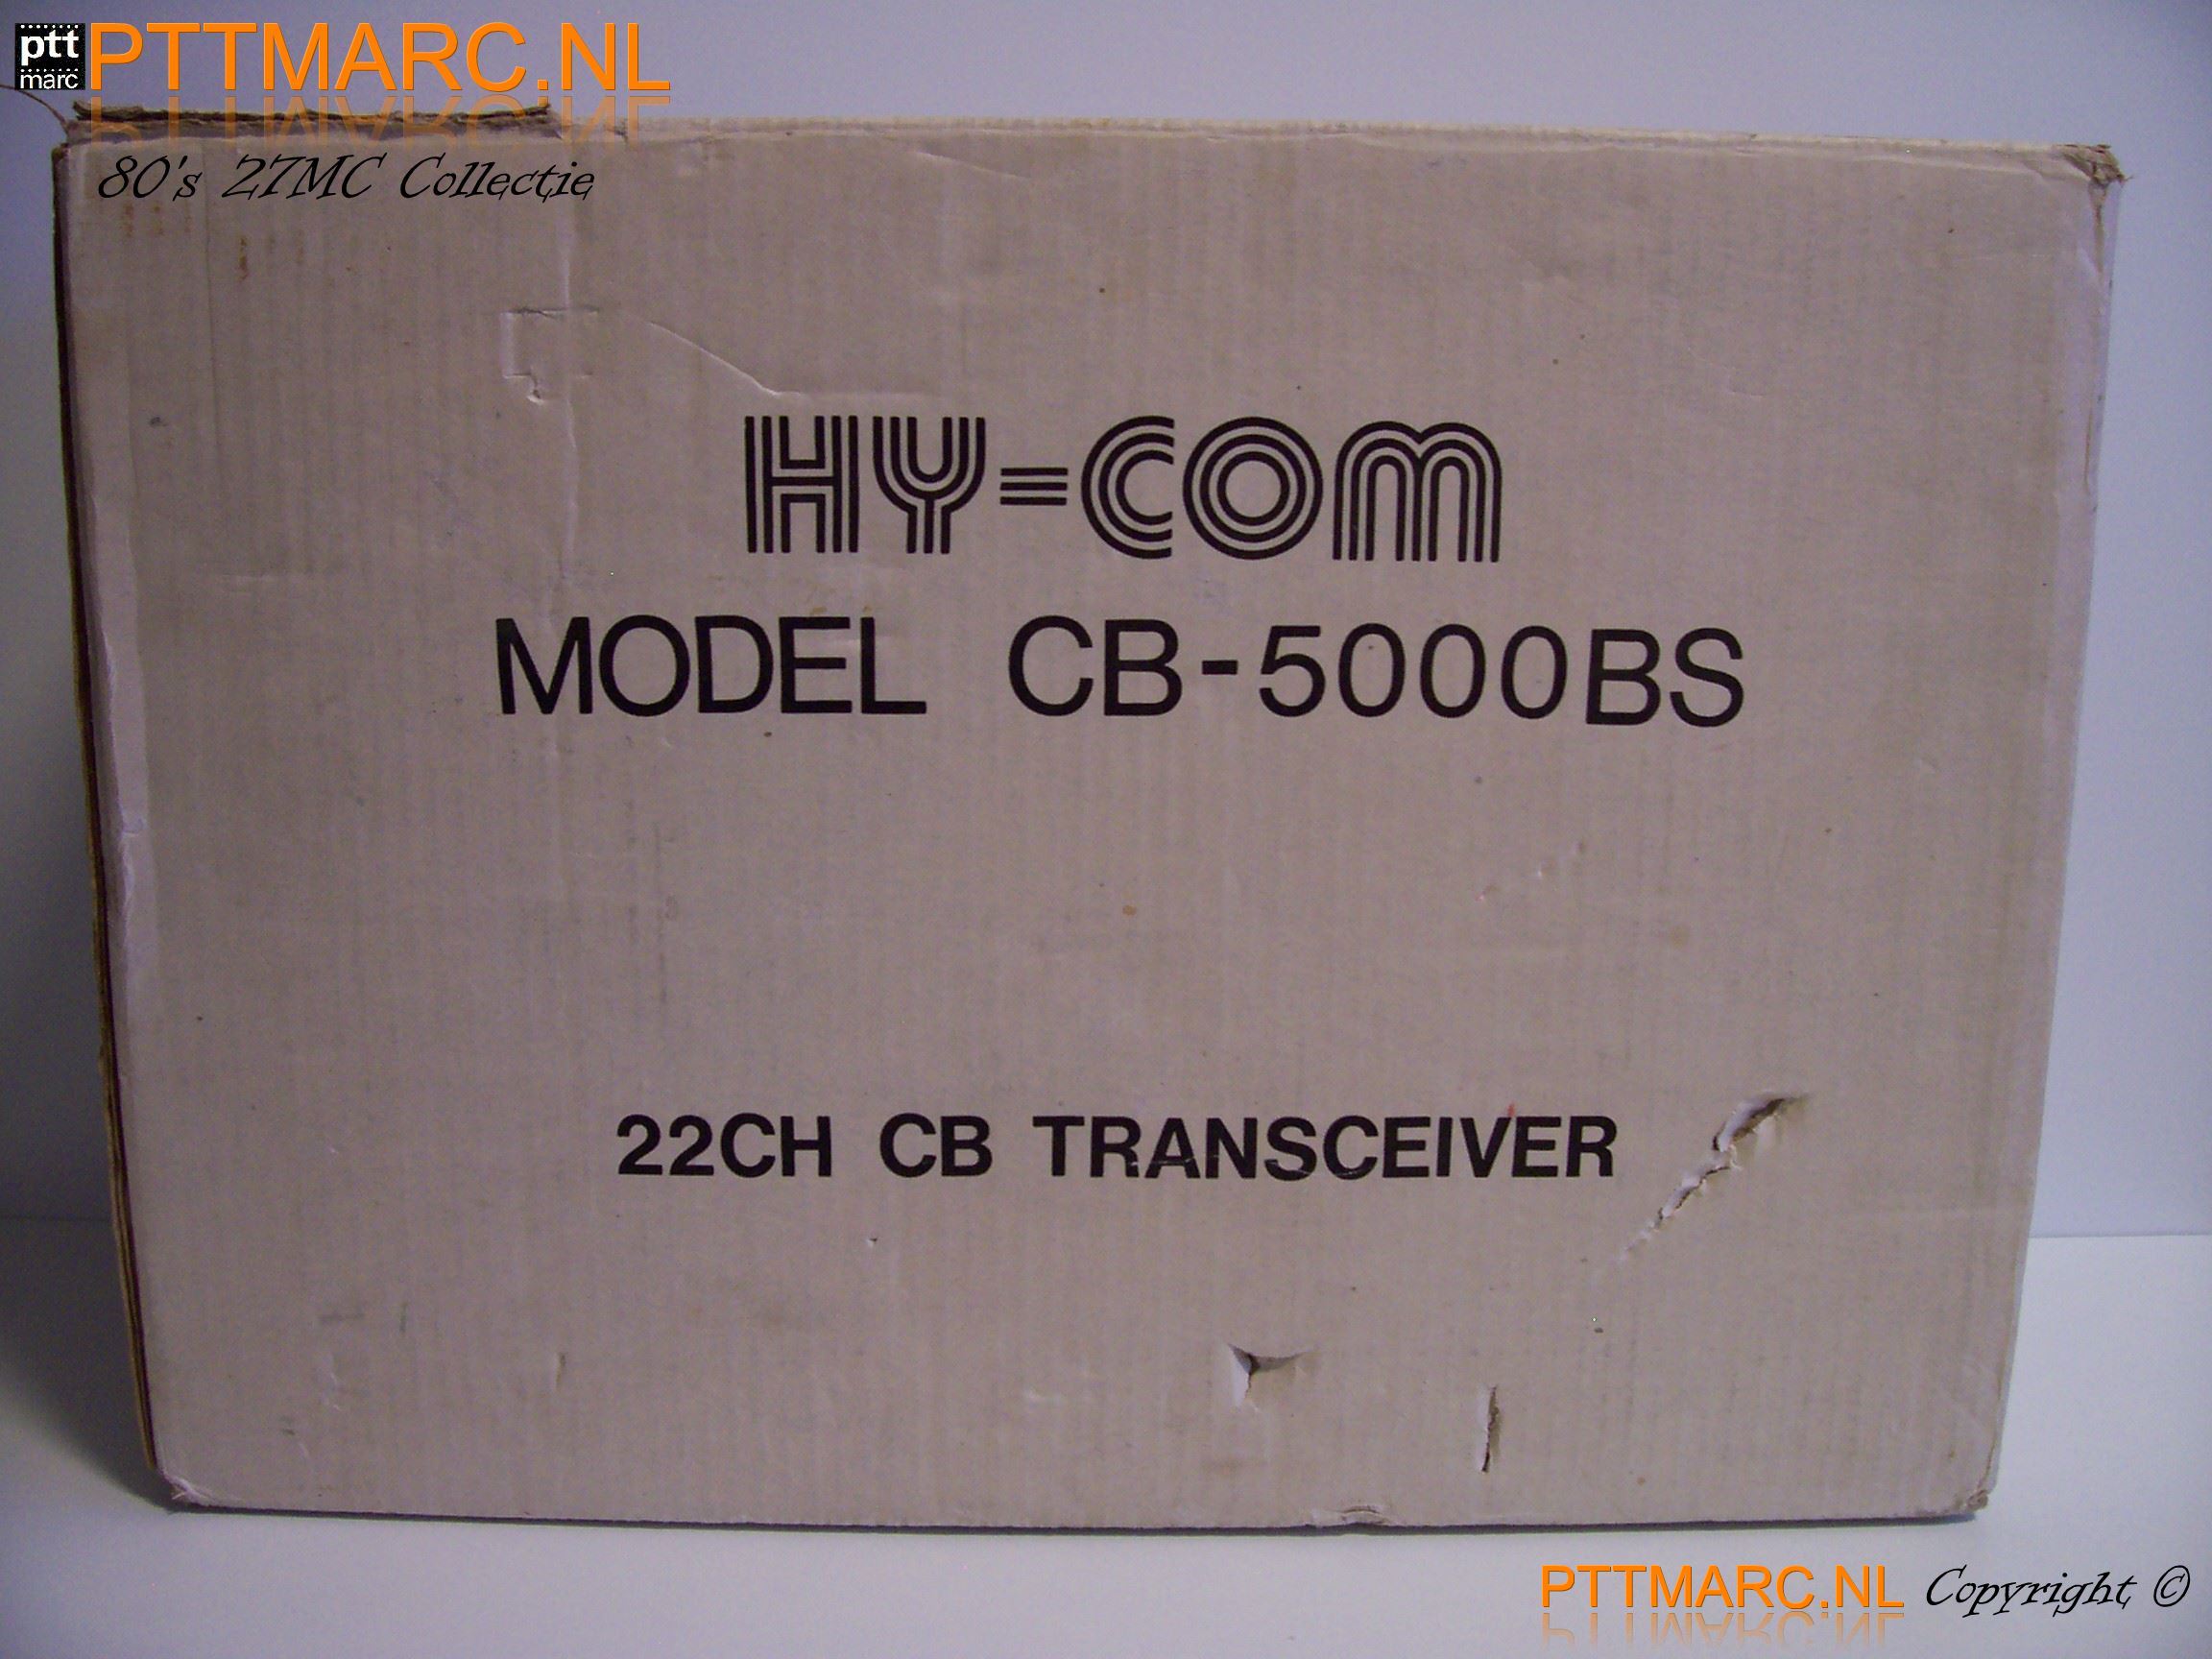 Hycom CB 5000